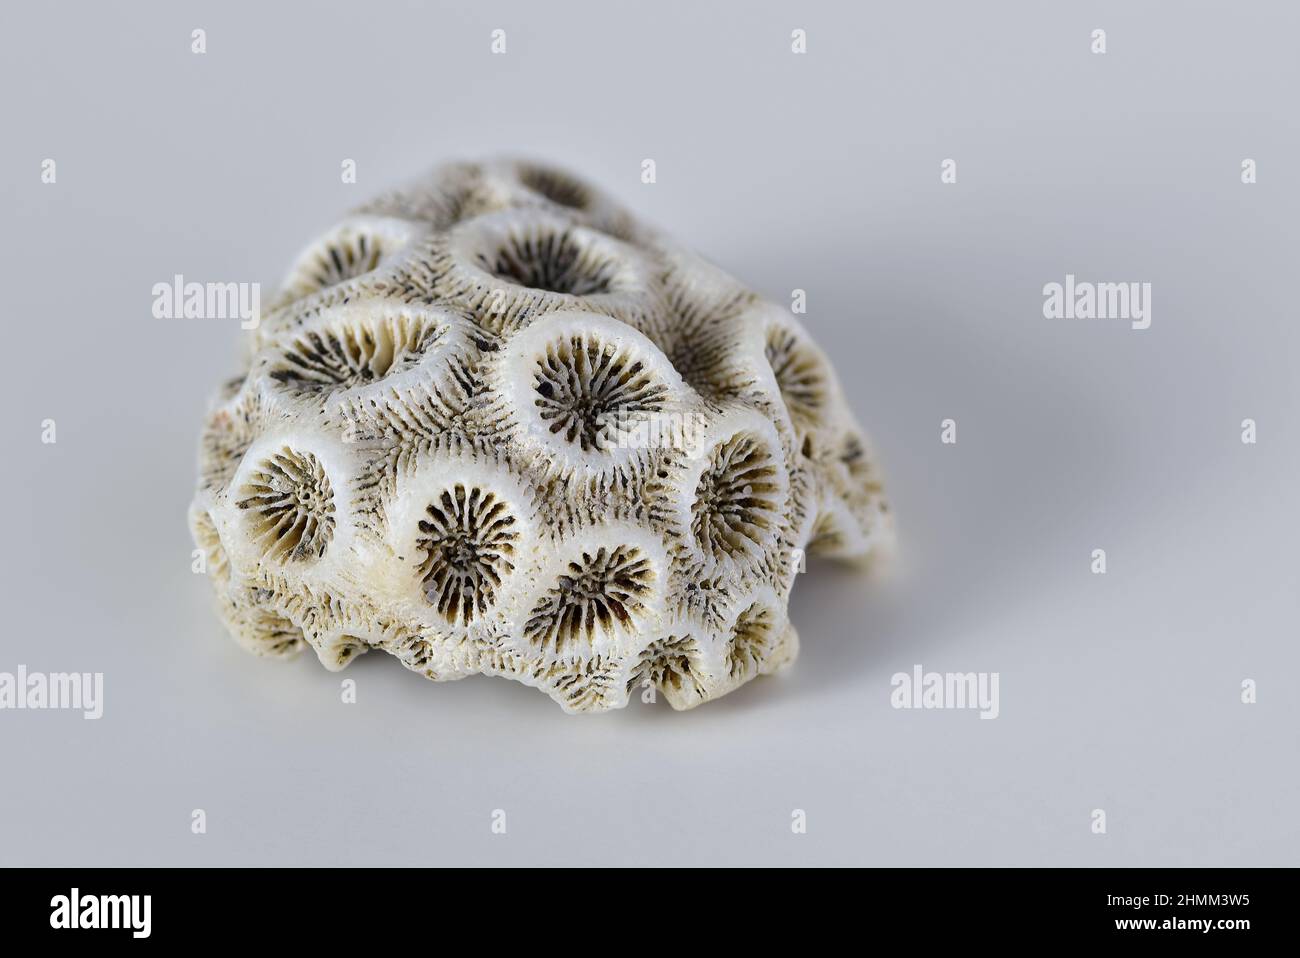 Abgestorbene weiße harte Korallen oder steinerne Korallen (Scleractinia) auf hellgrauem Hintergrund, Makrofotografie mit geringer Tiefenschärfe Stockfoto